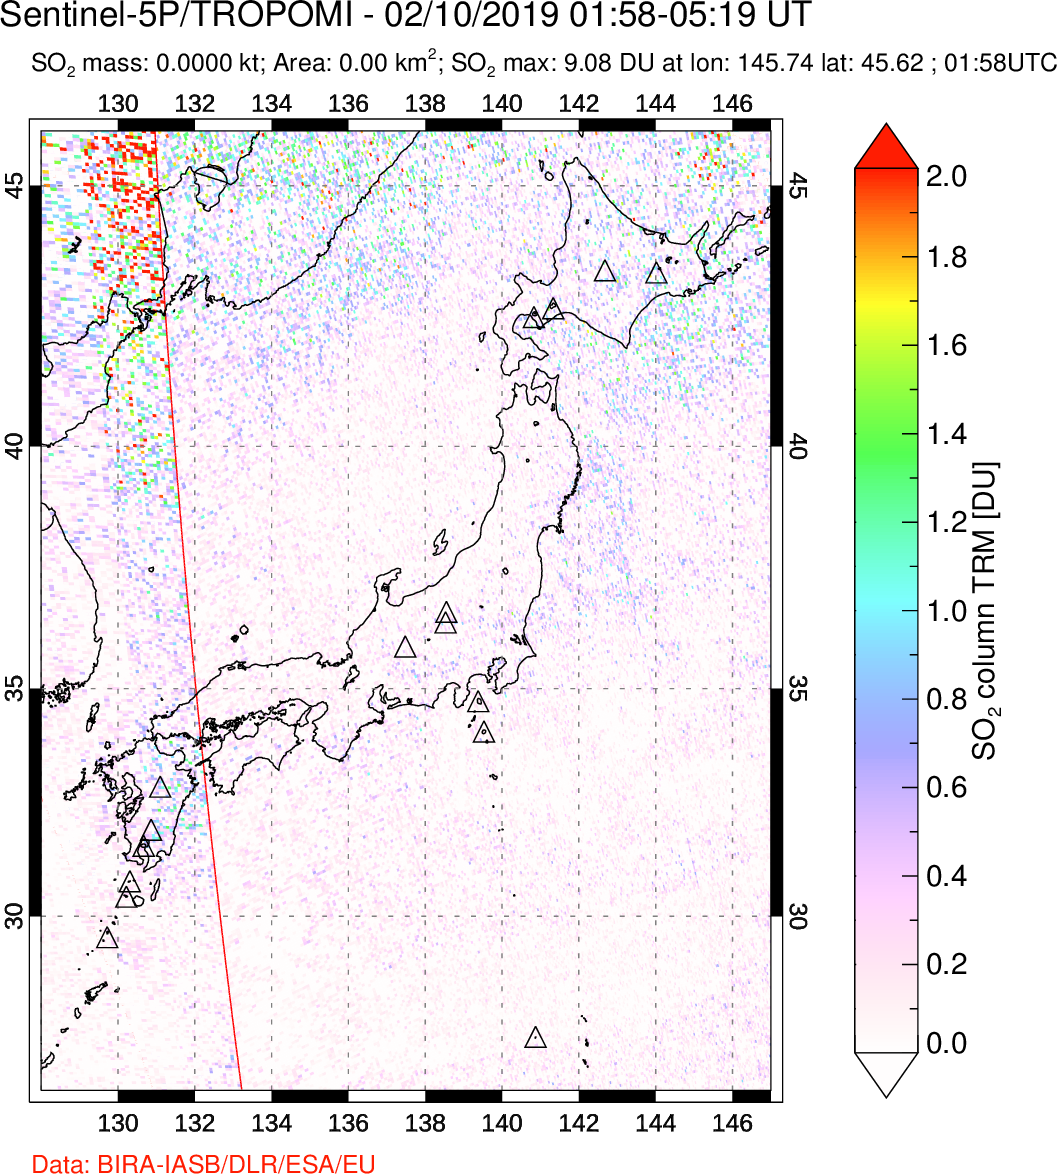 A sulfur dioxide image over Japan on Feb 10, 2019.